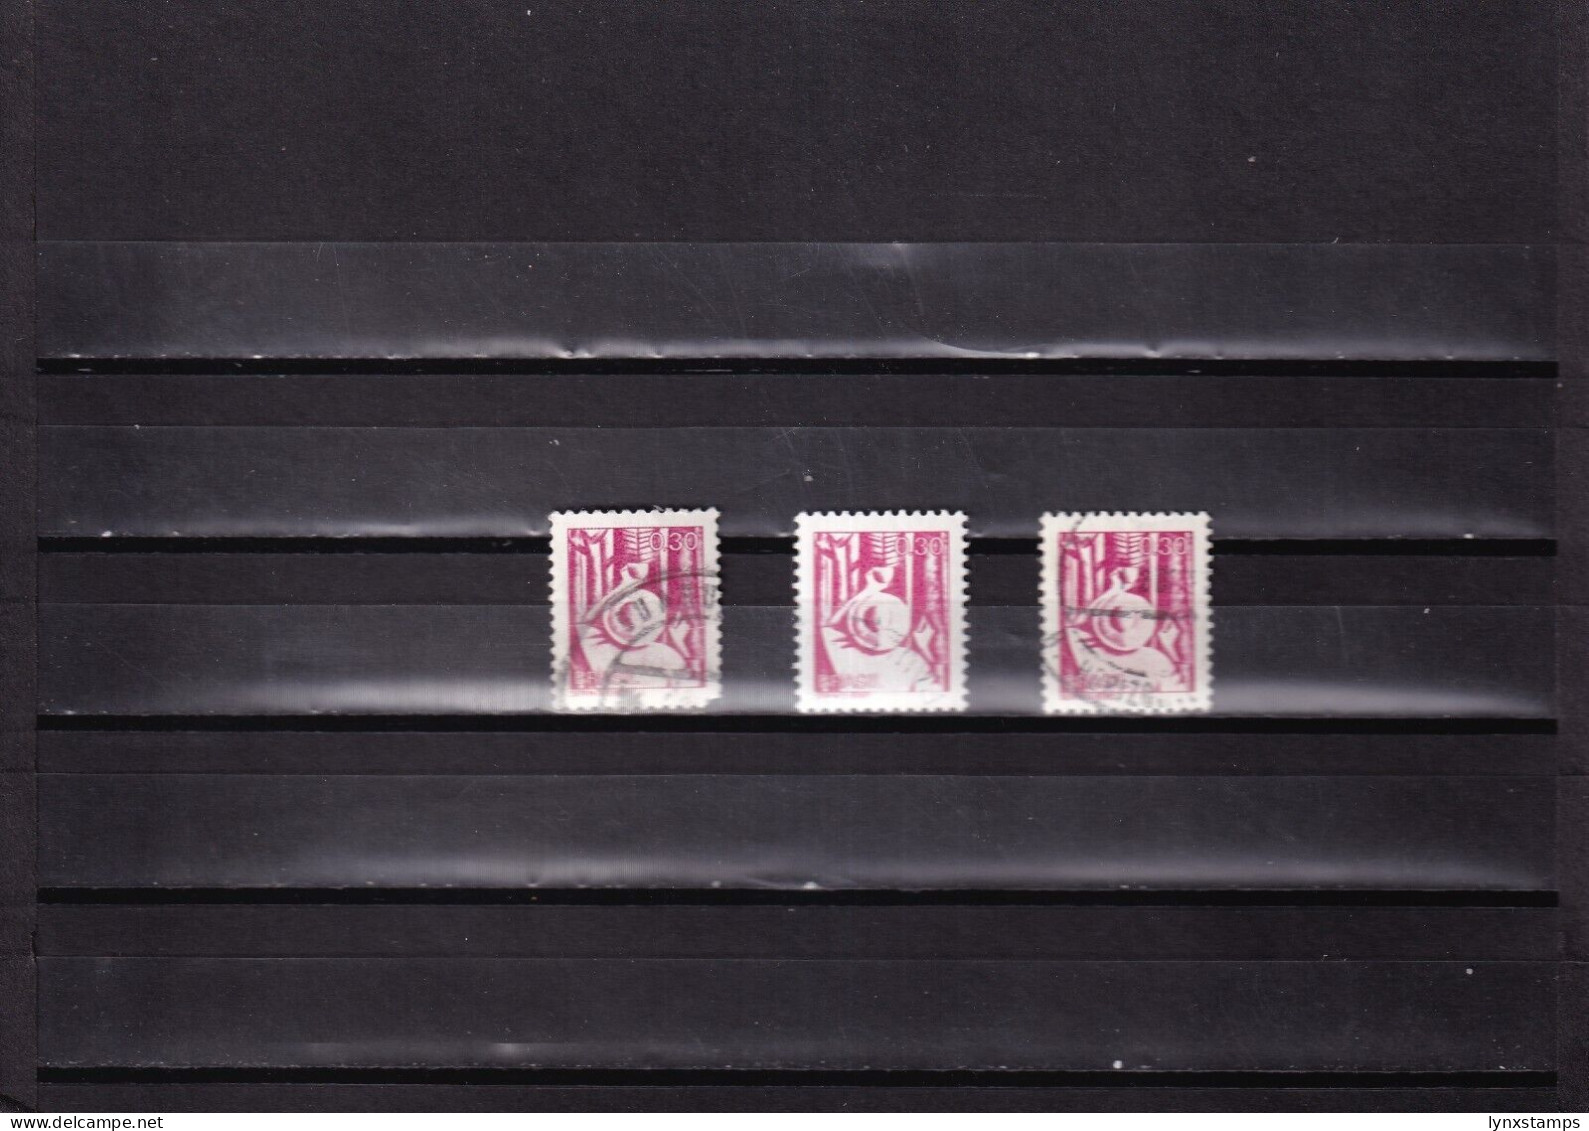 ER03 Brazil 1979 Seringueiro - Rubber Gatherer Used Stamps - Gebruikt